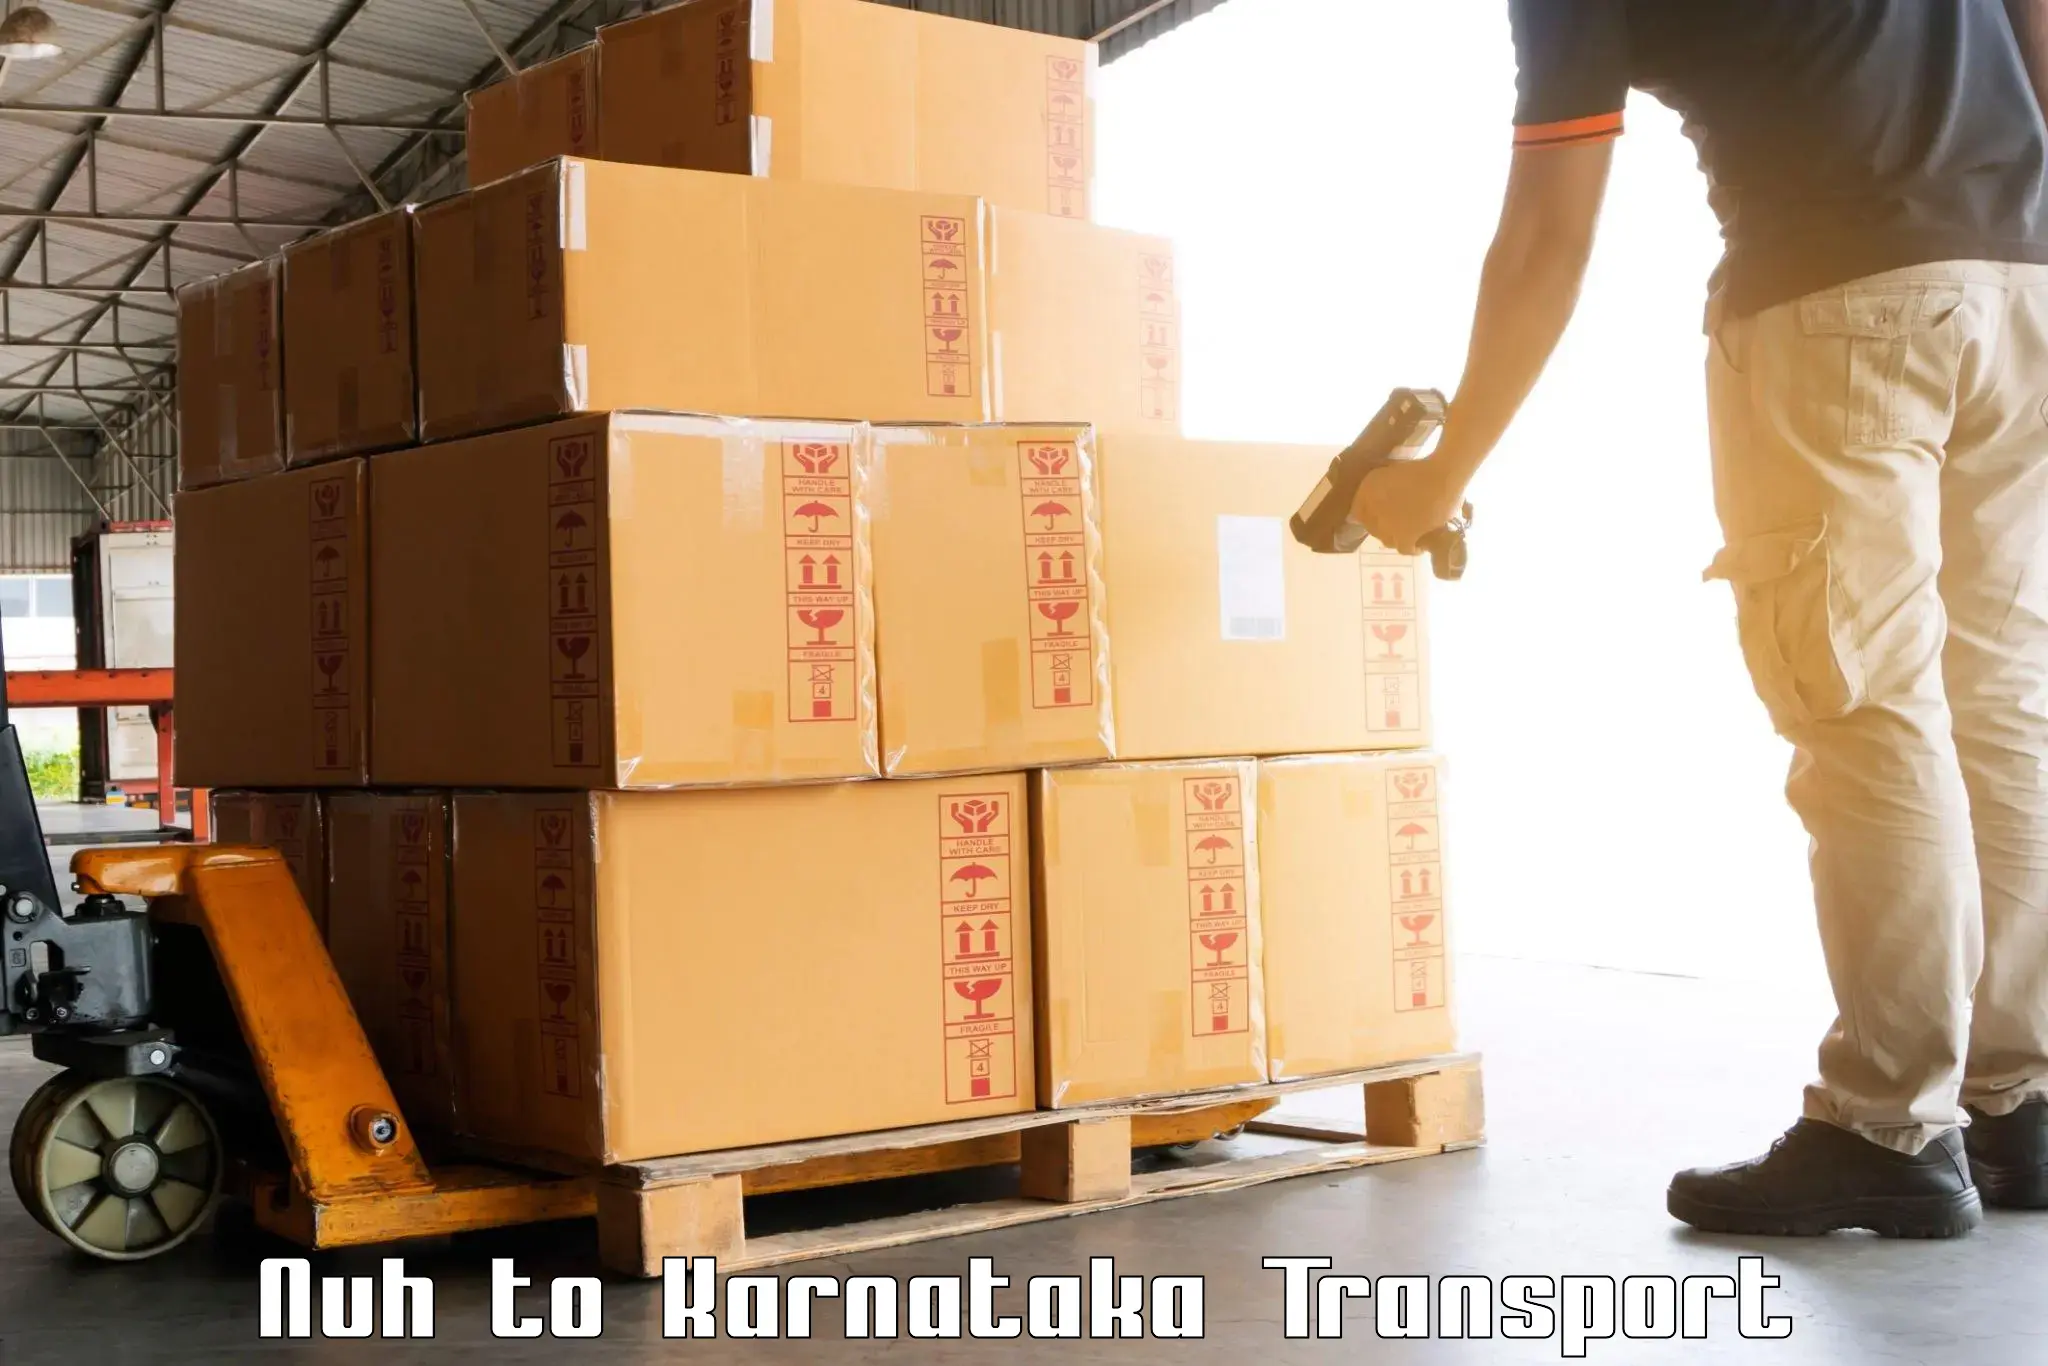 India truck logistics services Nuh to Kanjarakatte